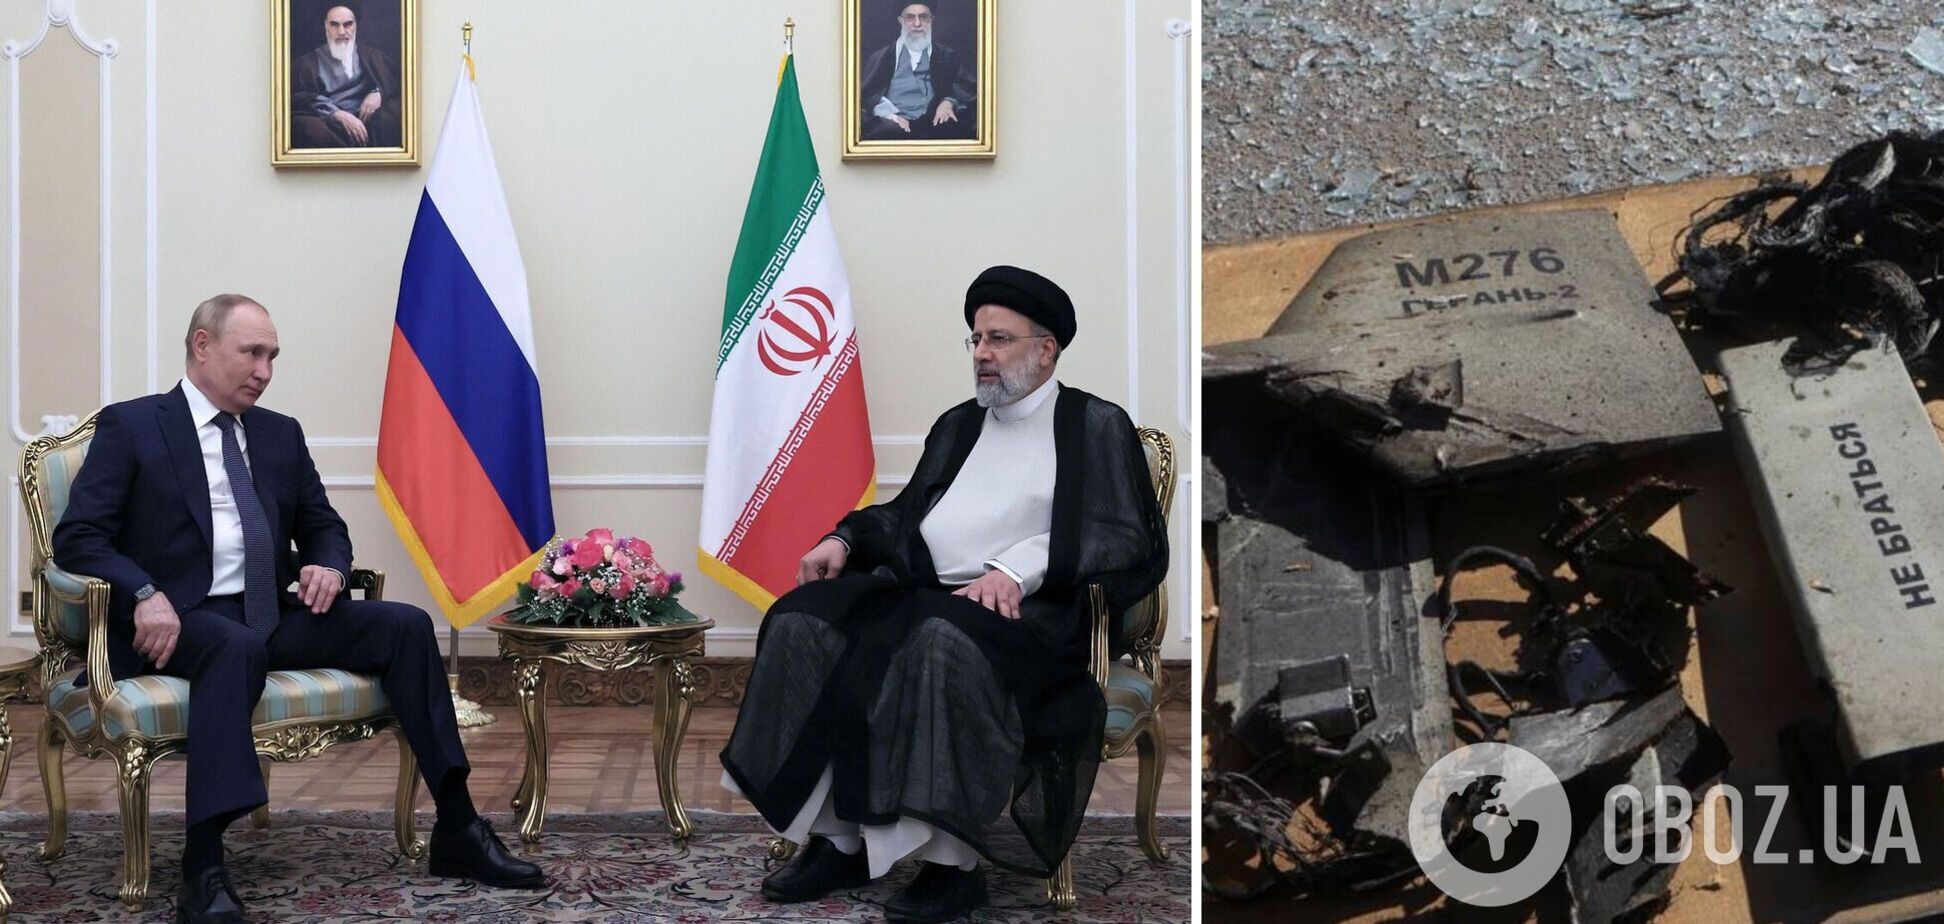 Иран полностью принял сторону Кремля